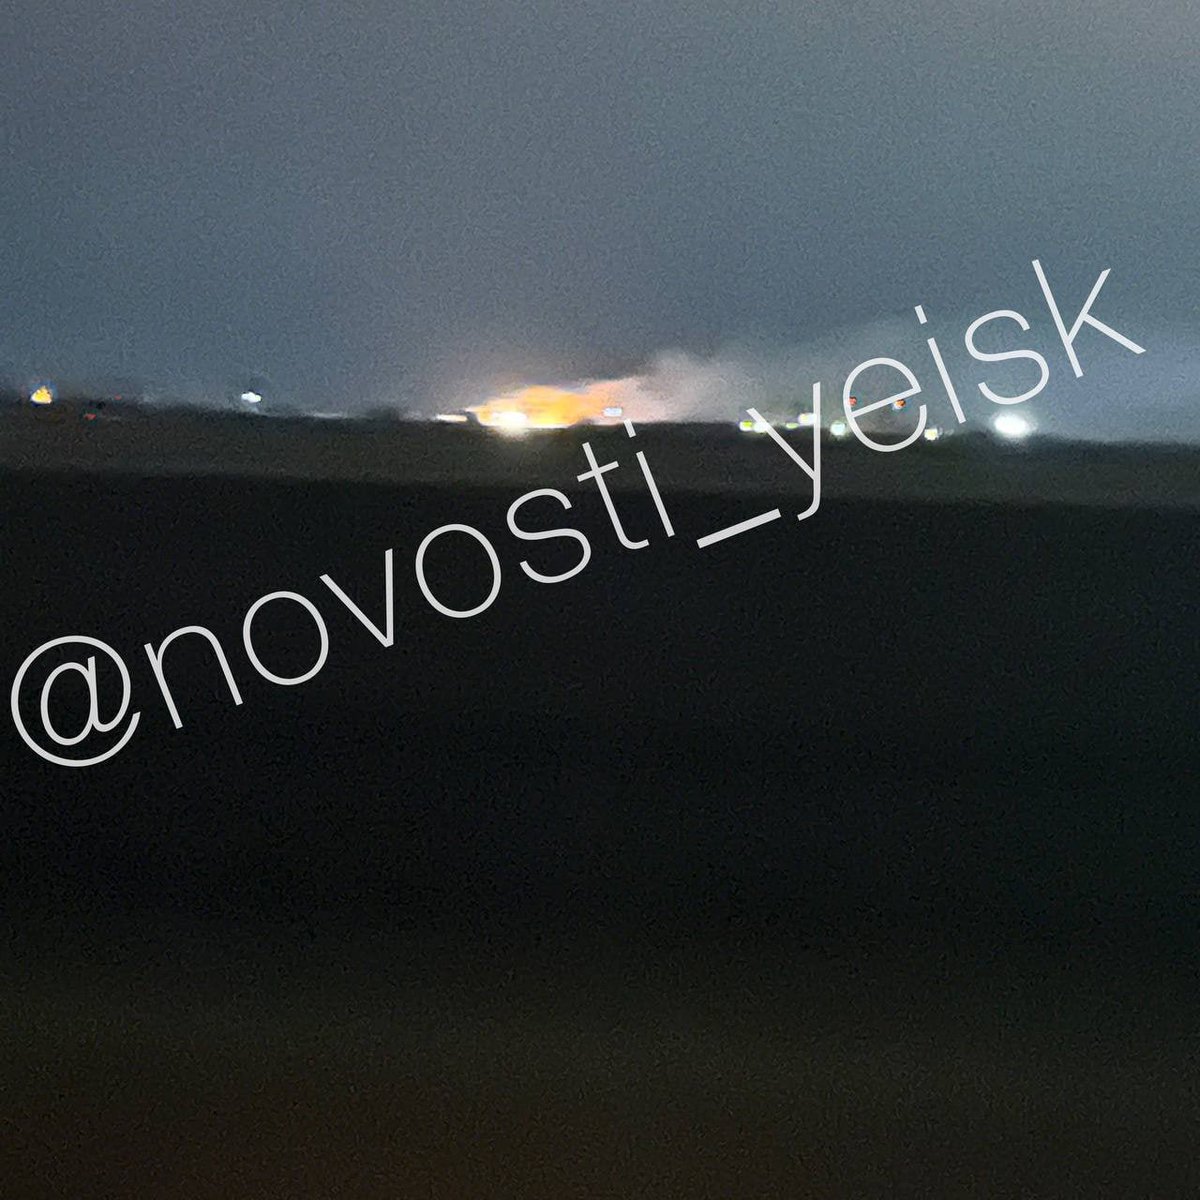 Incendi ed esplosioni sono stati segnalati vicino alla base aerea di Yeysk, Krasnodar Krai